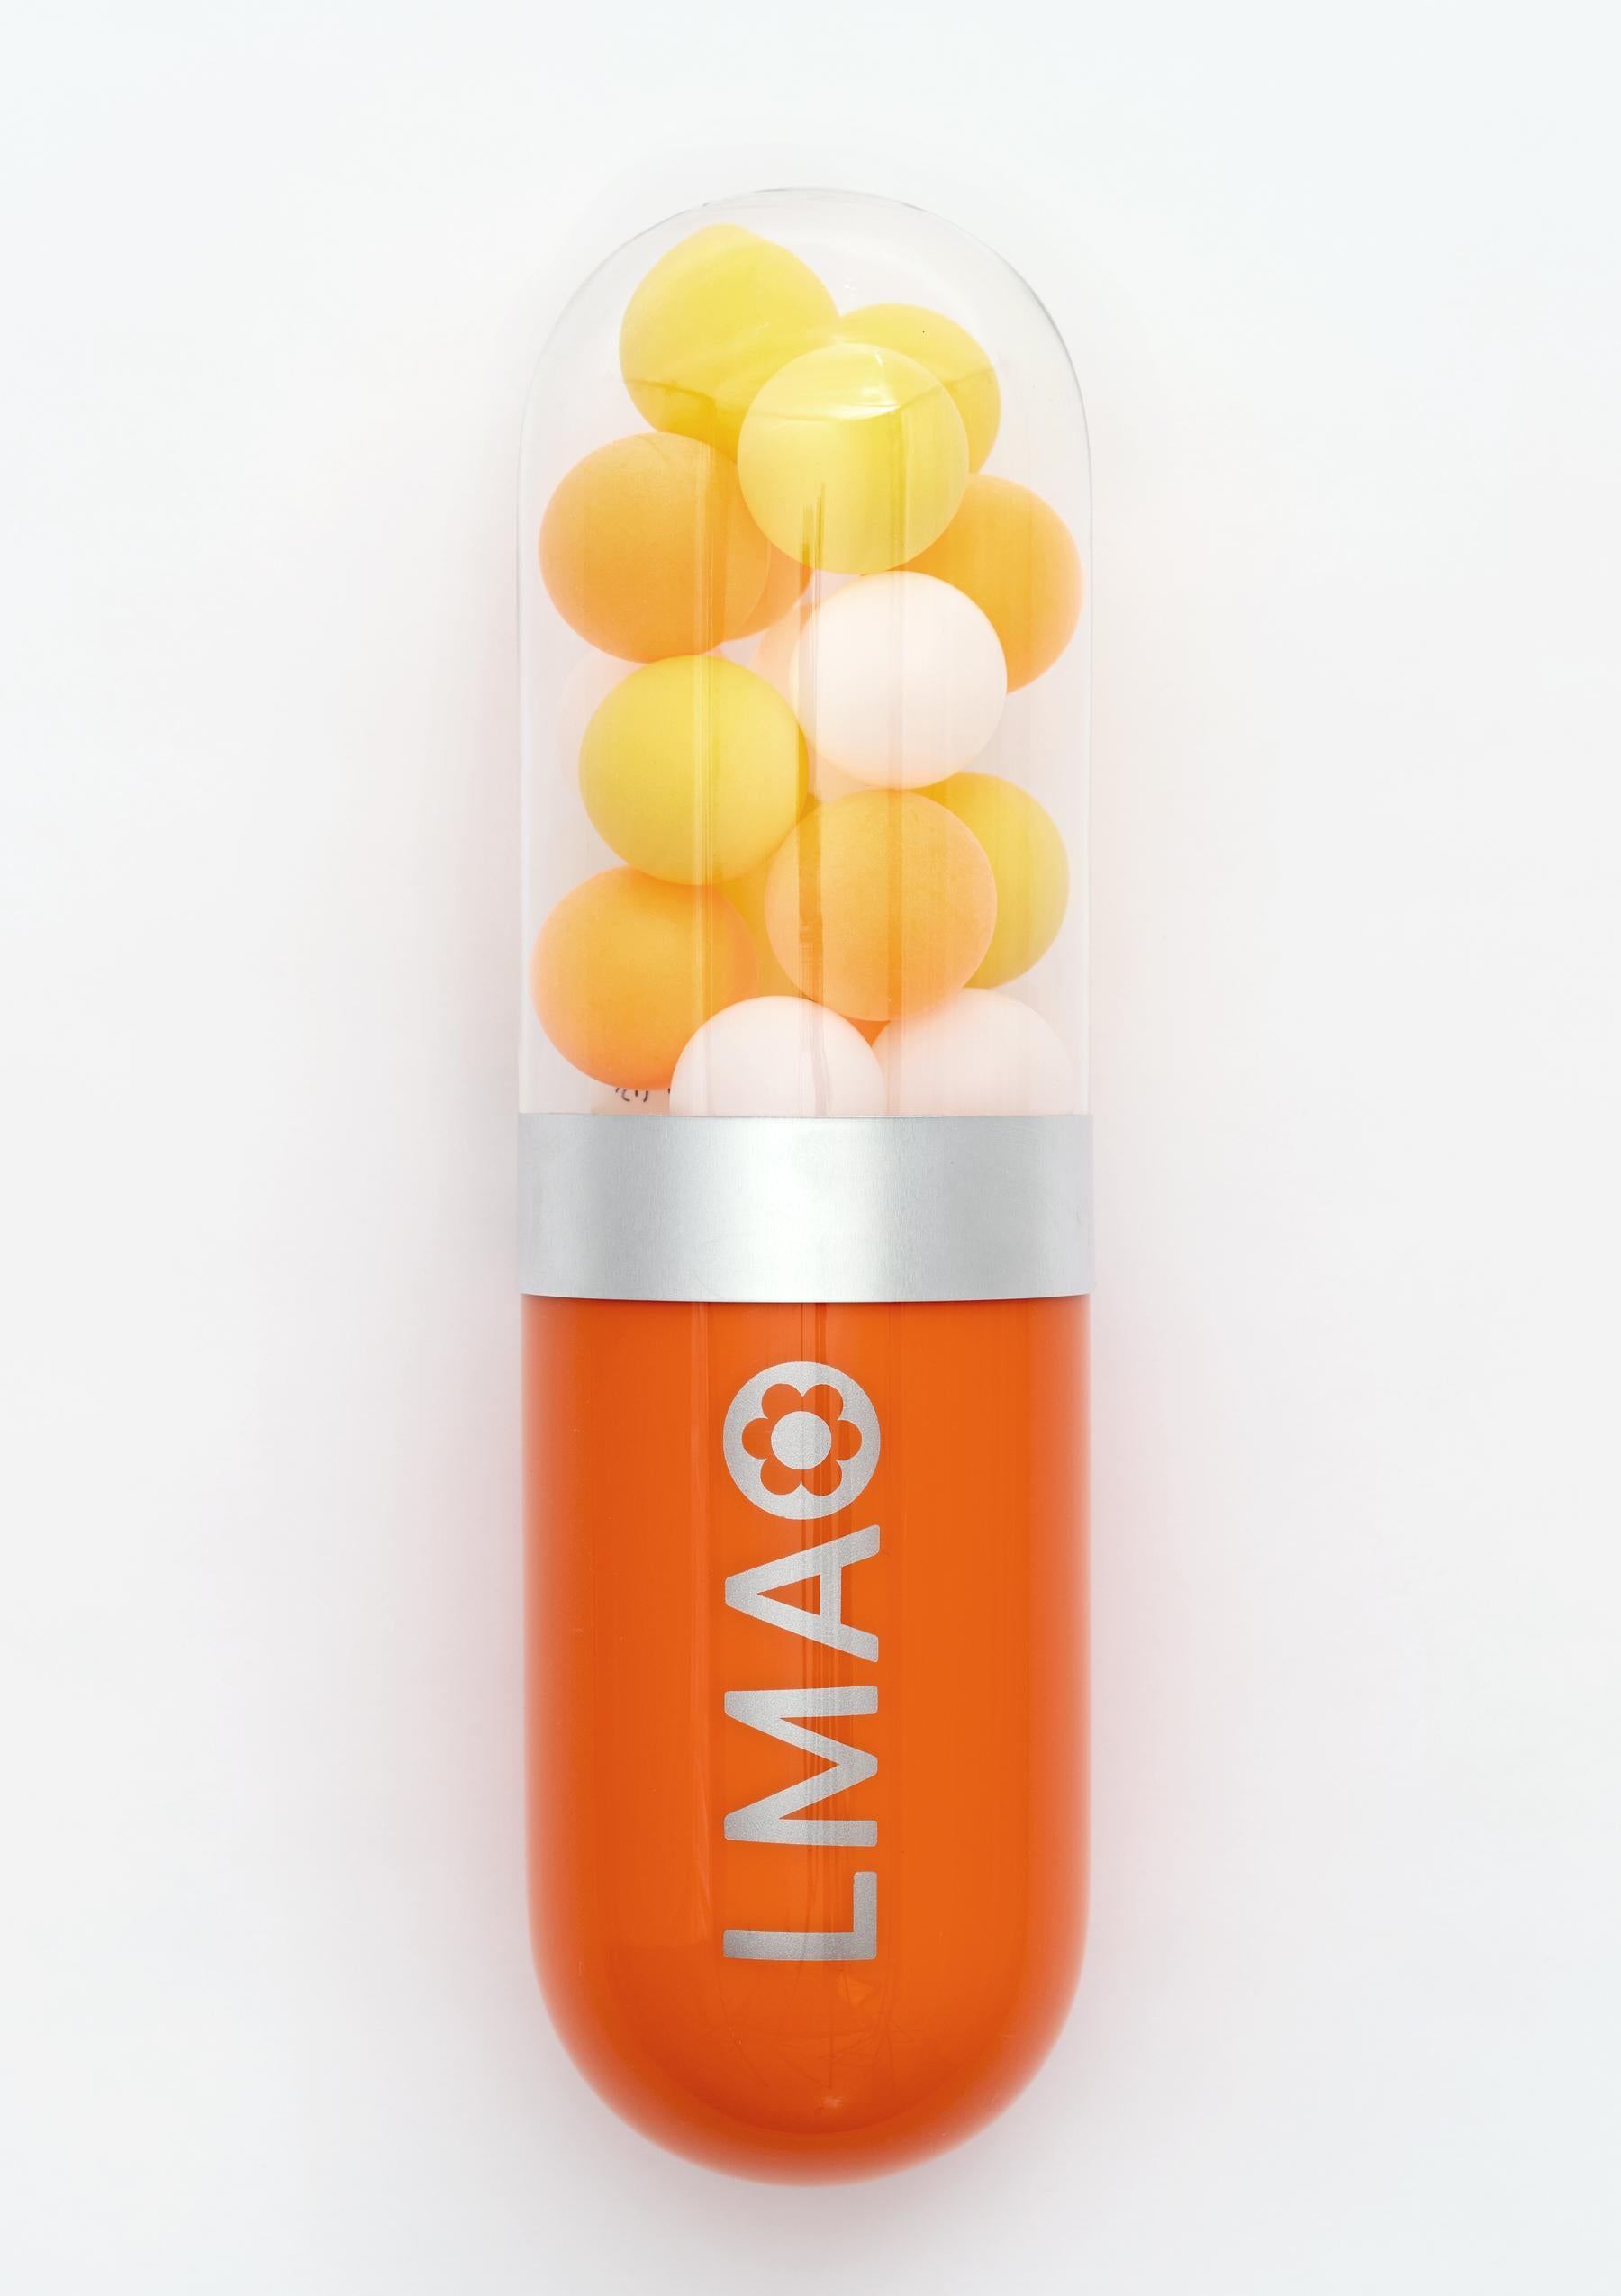 LMAO (Laughing My Ass Off) - Orange glass pill sculpture